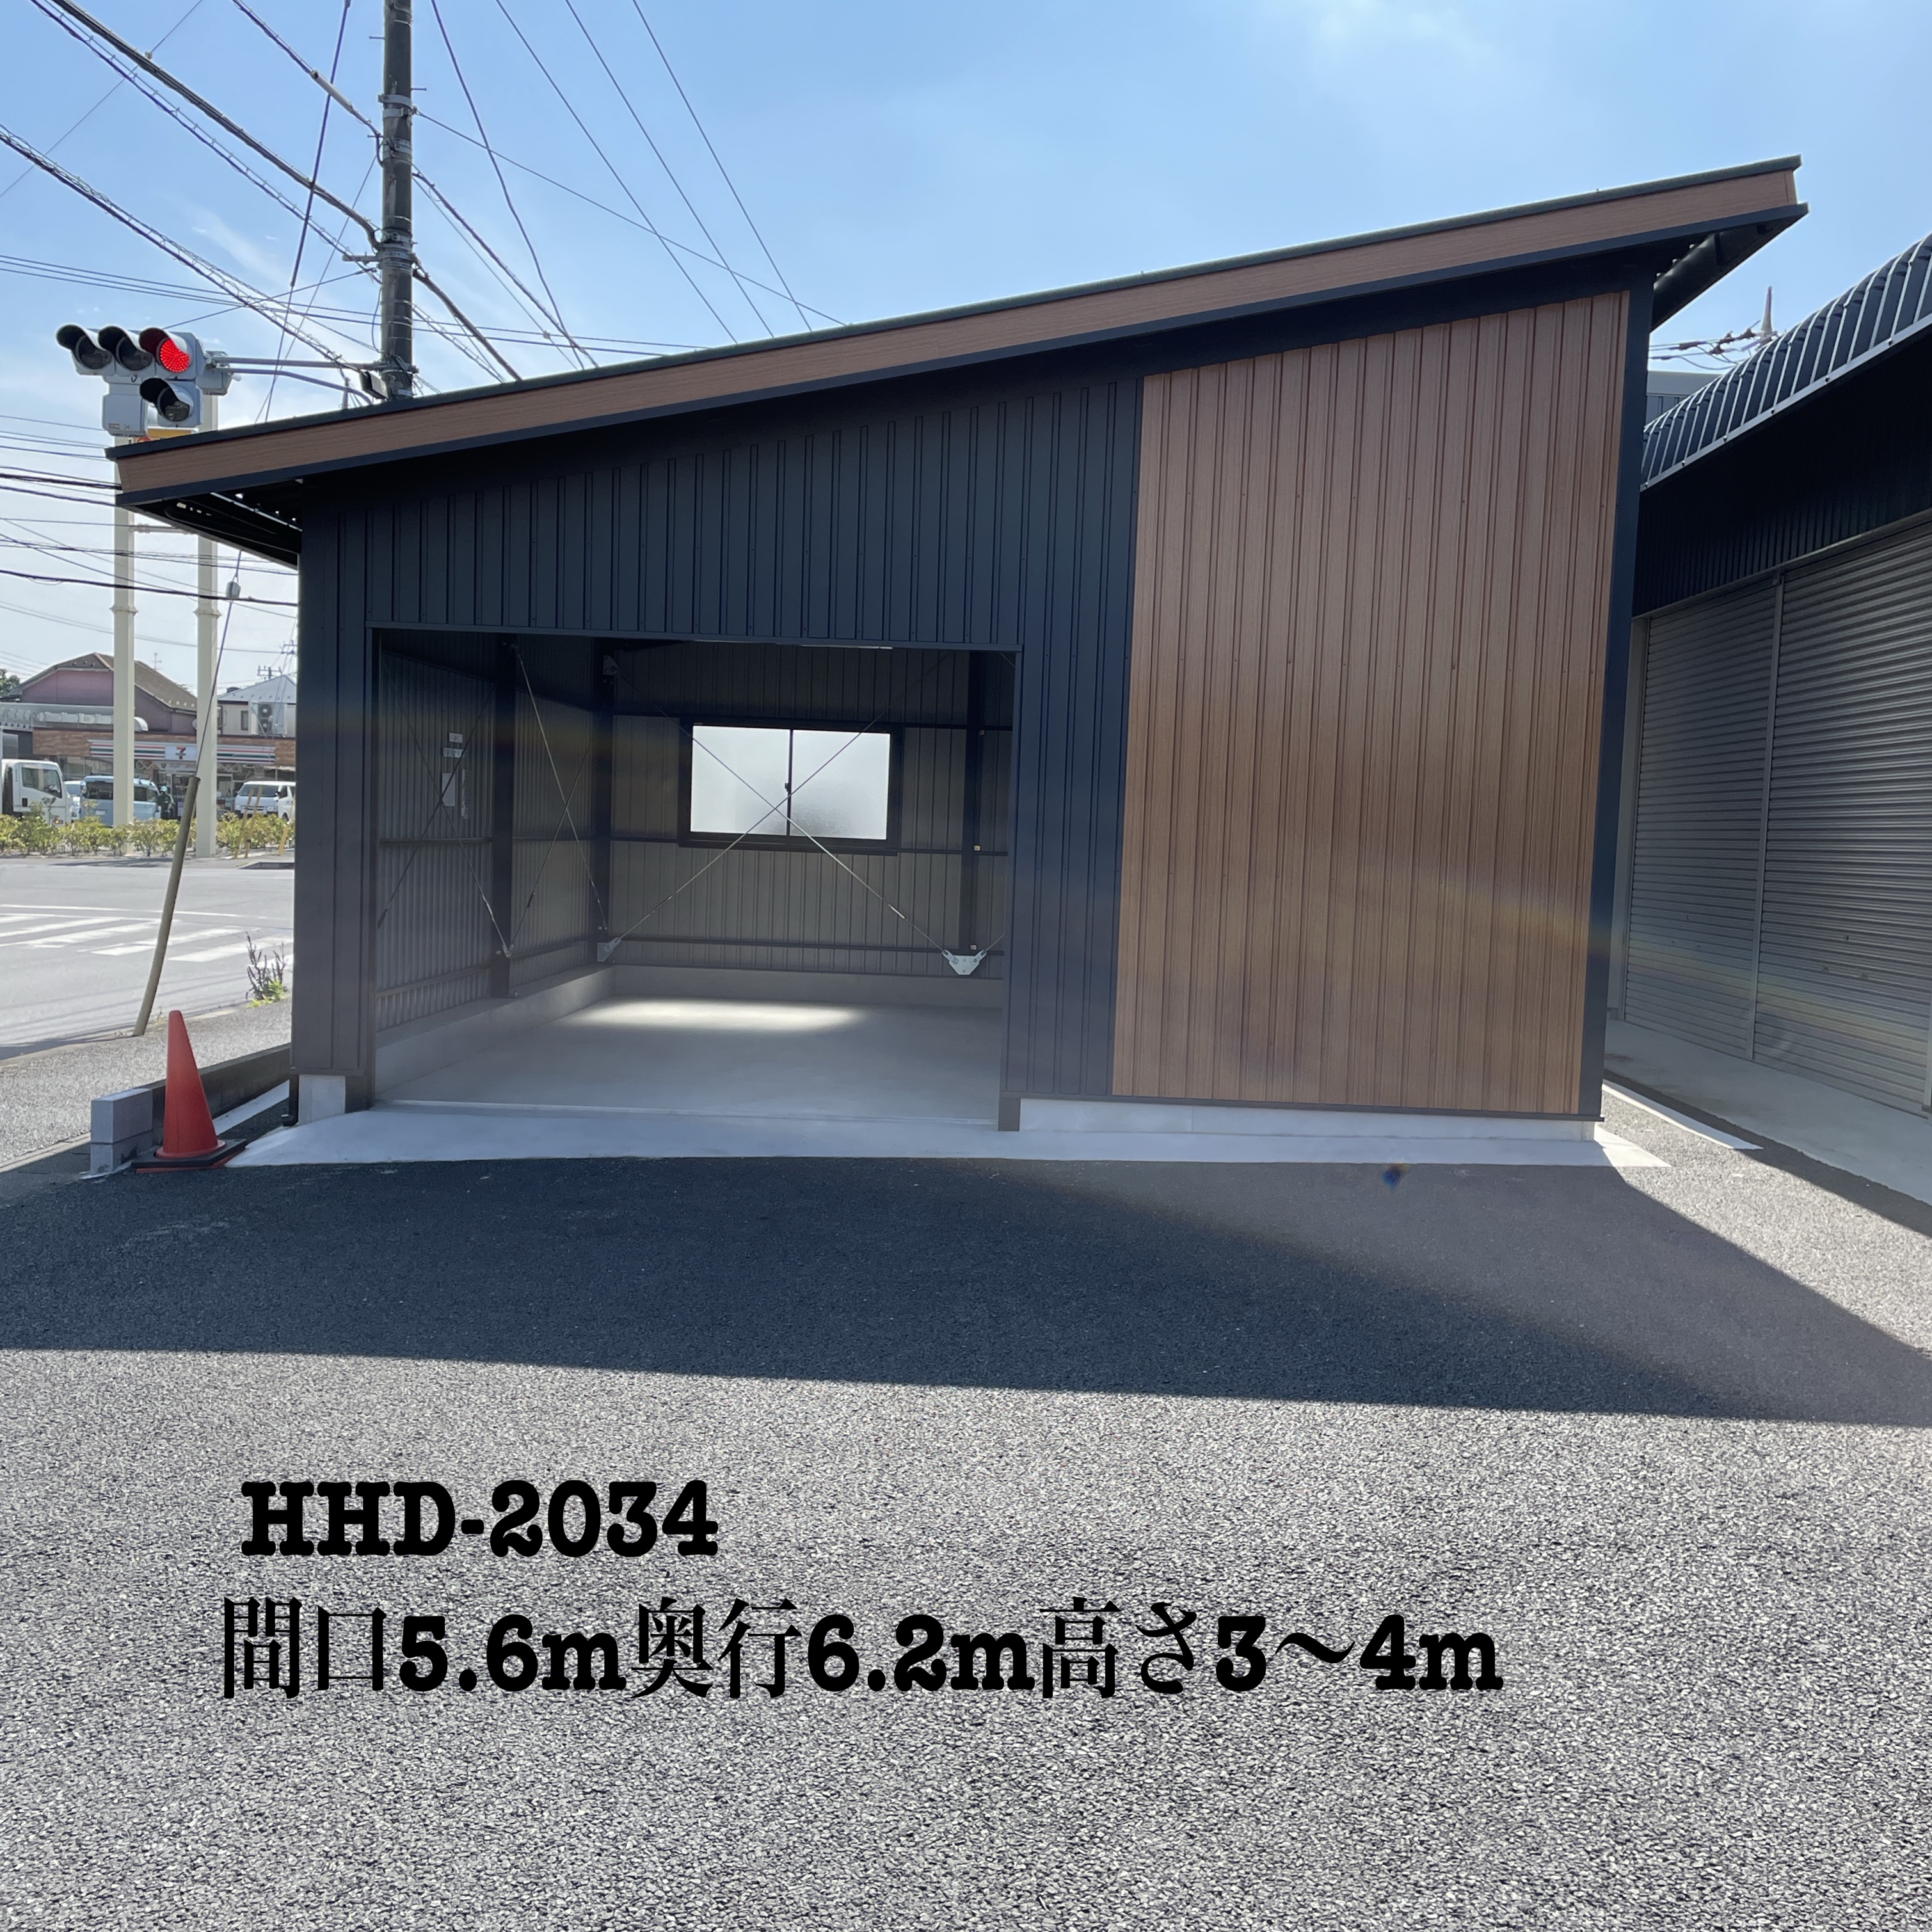 HHD-2034